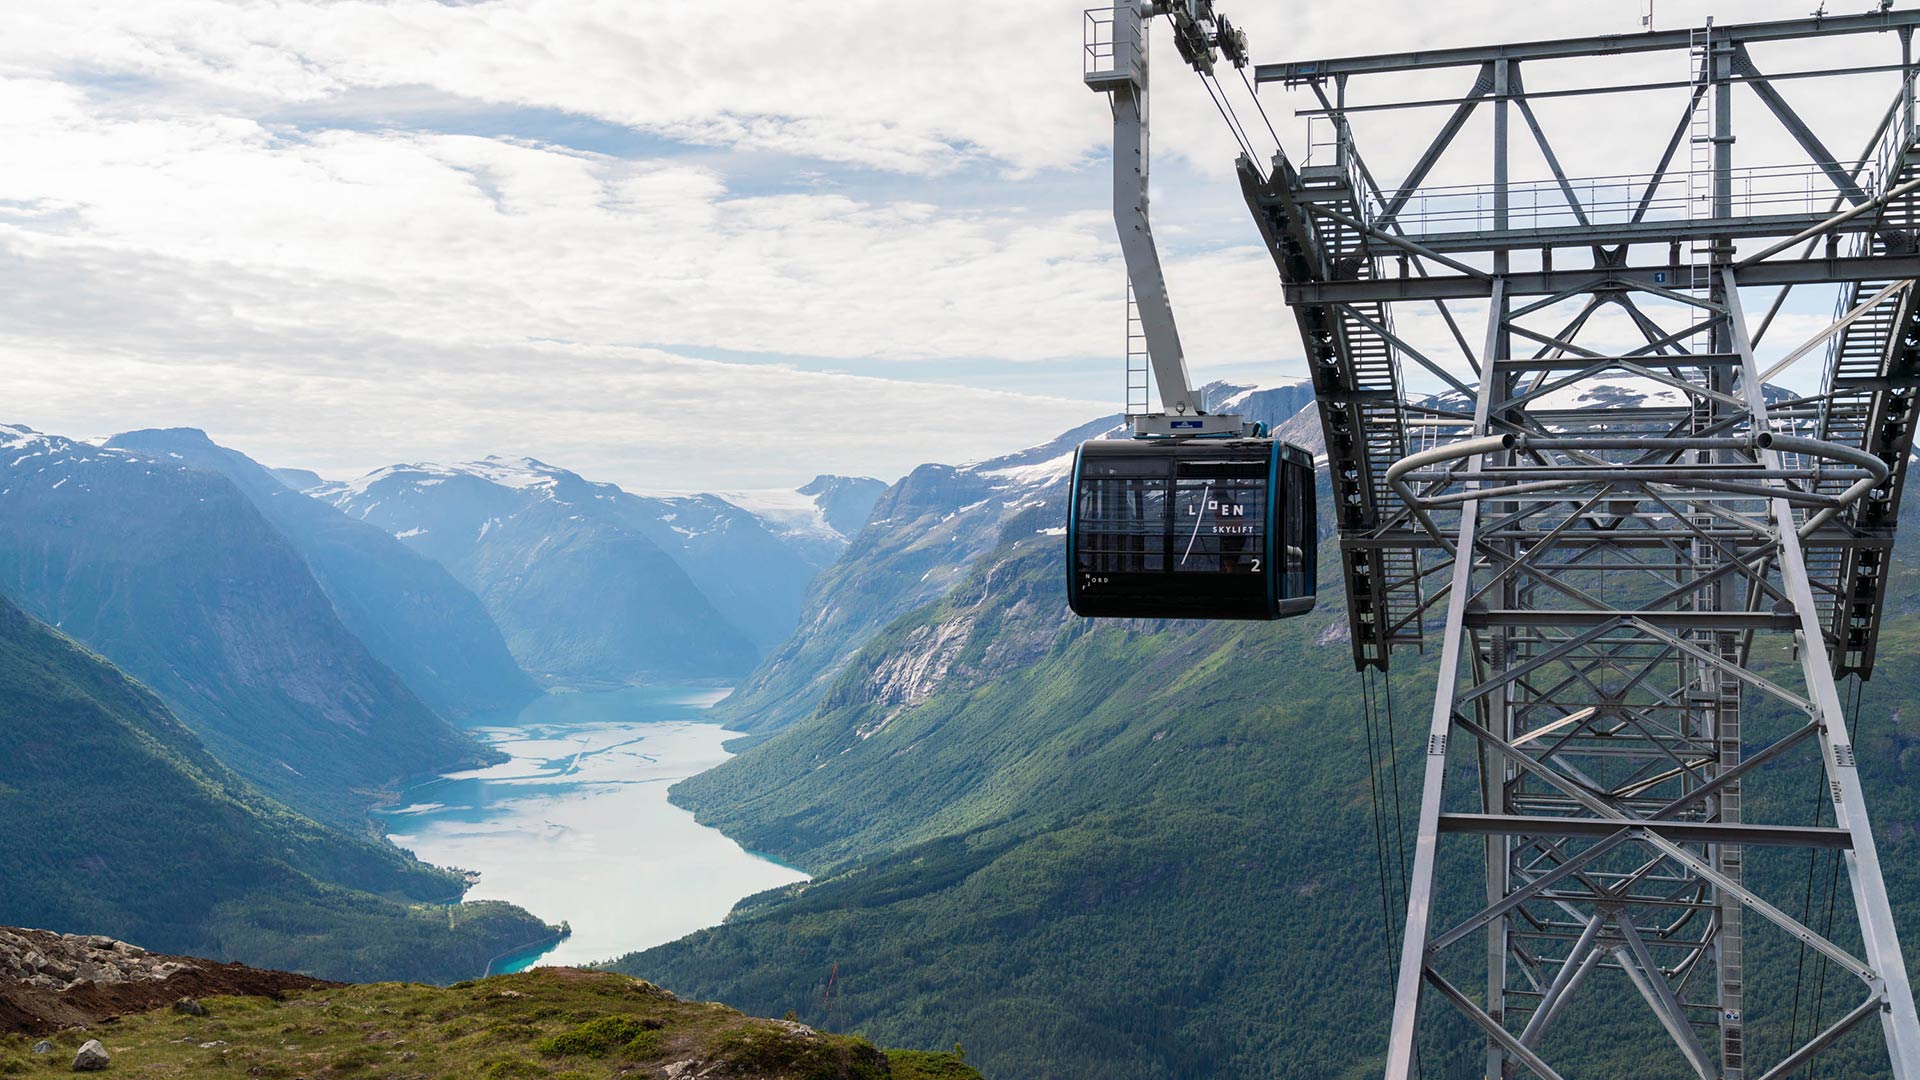 Loen Skylift in Norway Photo: Bard Basberg